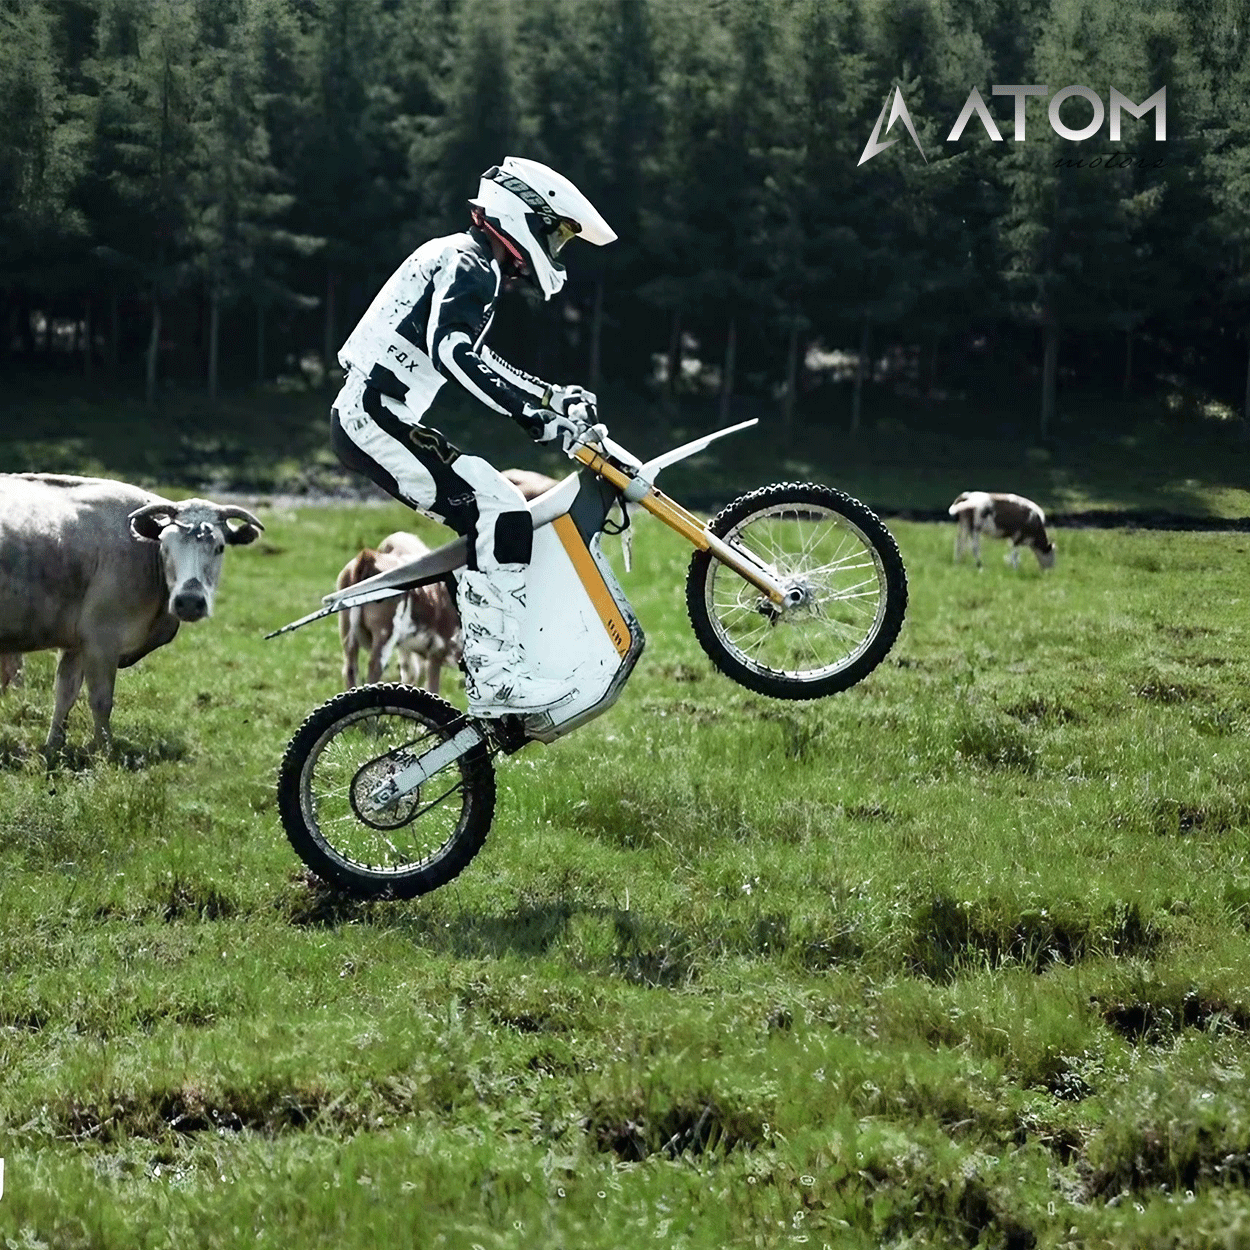 Moto électrique Dirtbike, Gowow Ori | 4000 W | 50 cc - Atom Motors